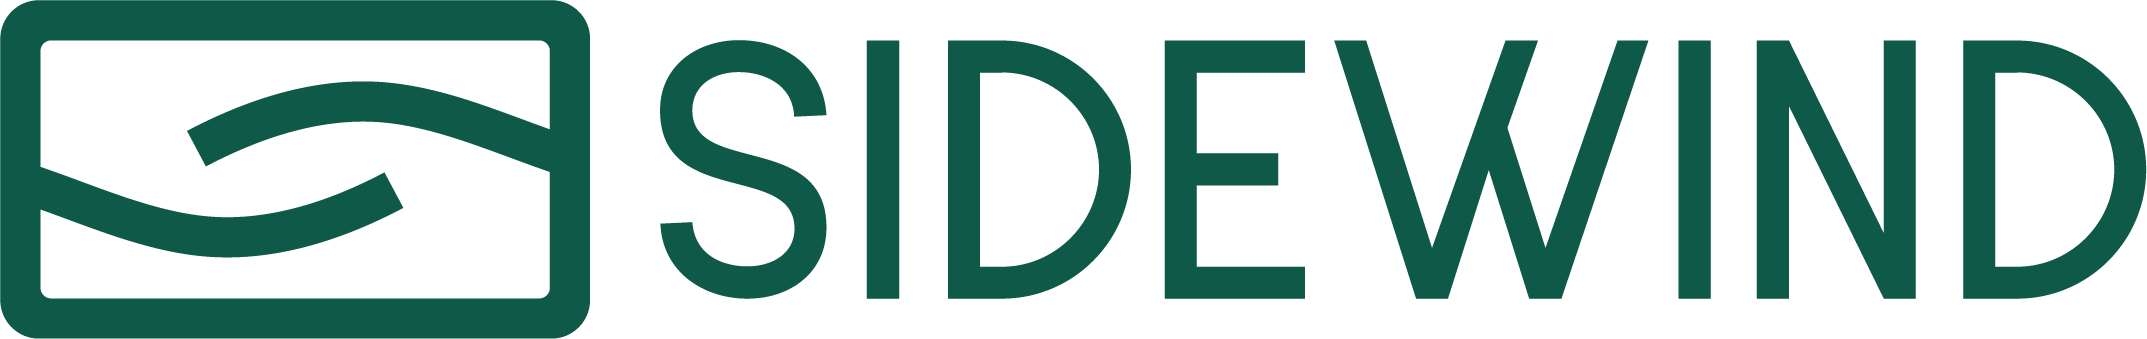 Sidewind logo